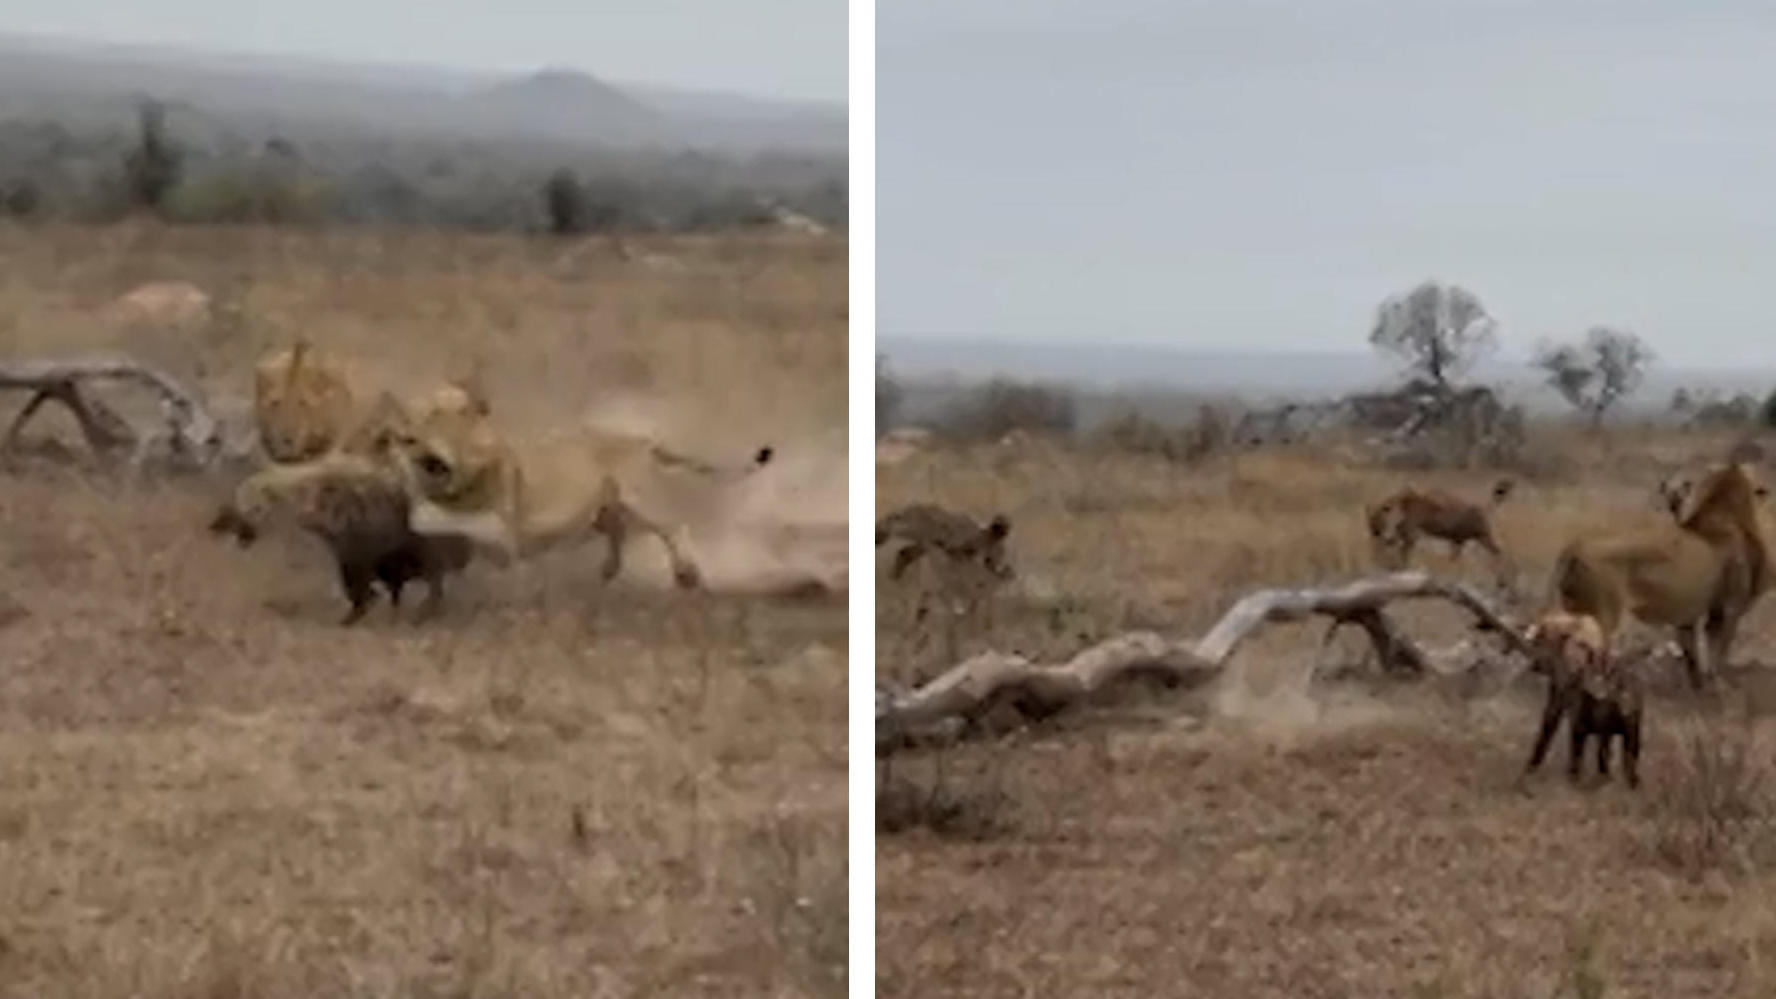 Löwen wollen Hyäne zerfleischen - Rudel kommt zur Rettung! Brutaler Angriff